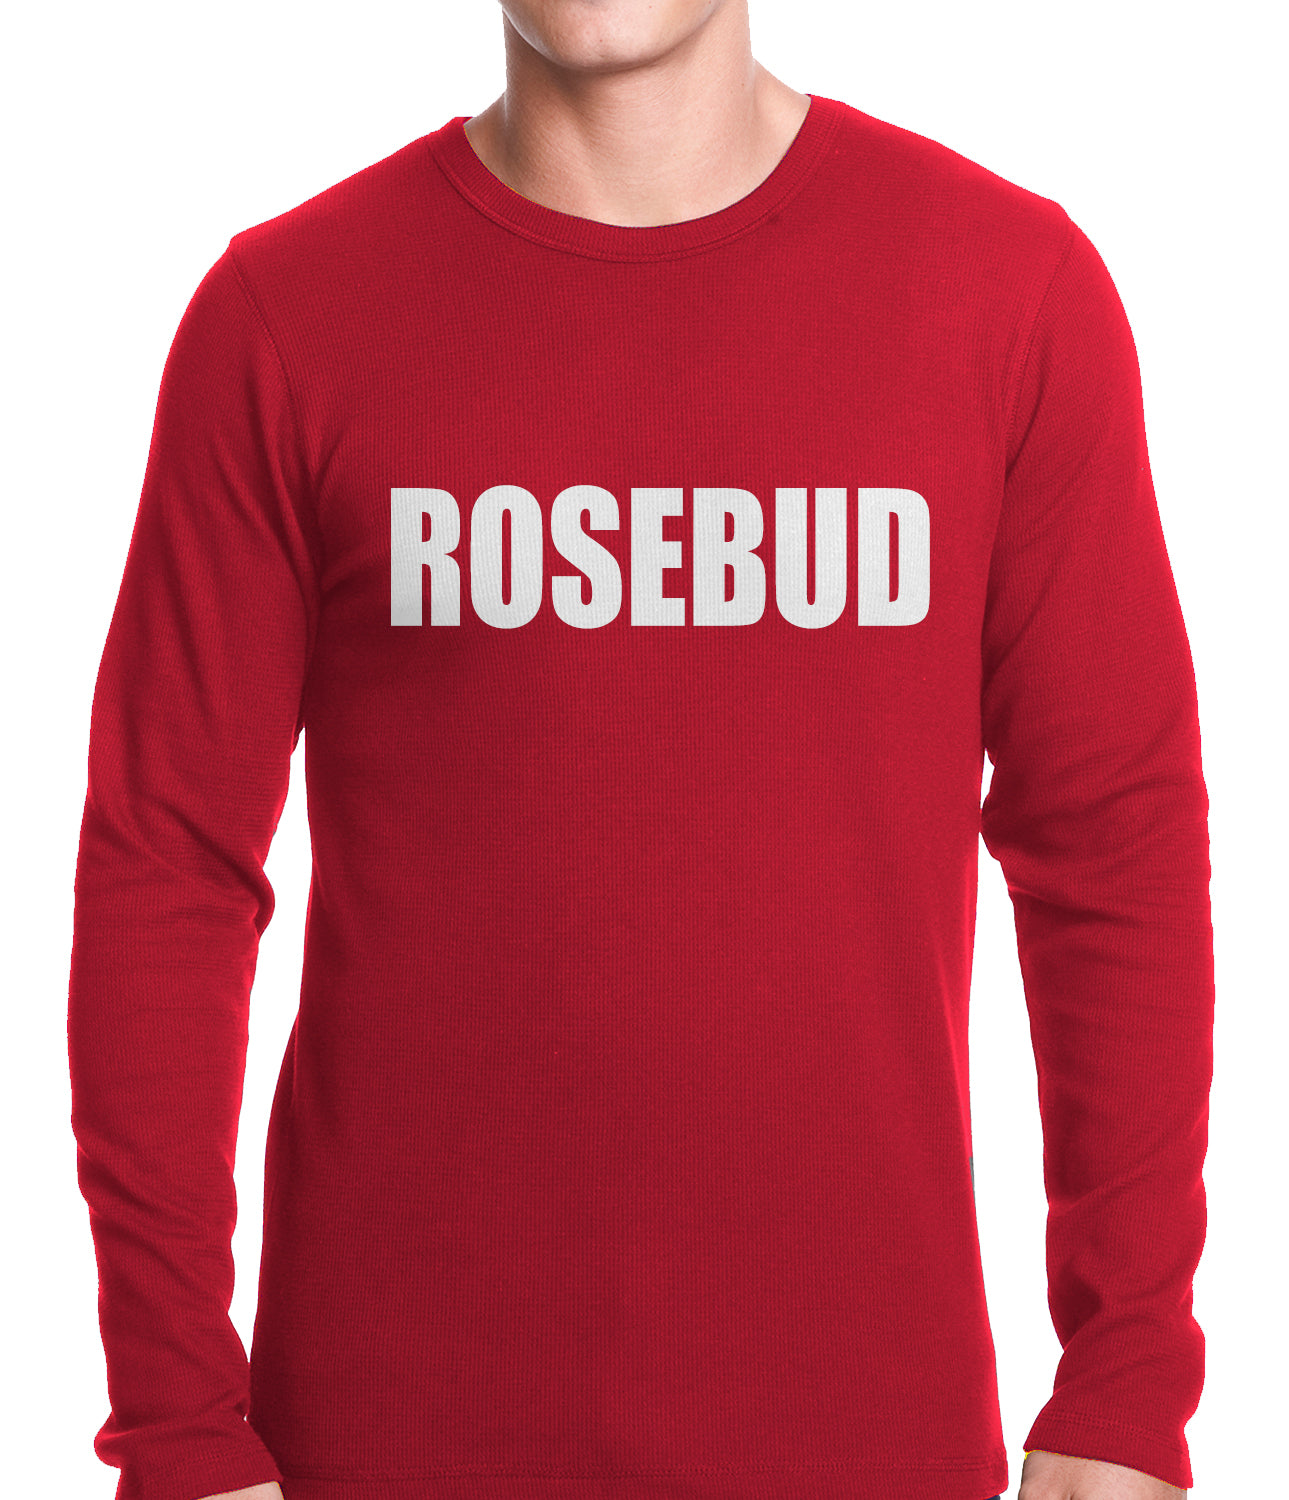 Rosebud Thermal Shirt